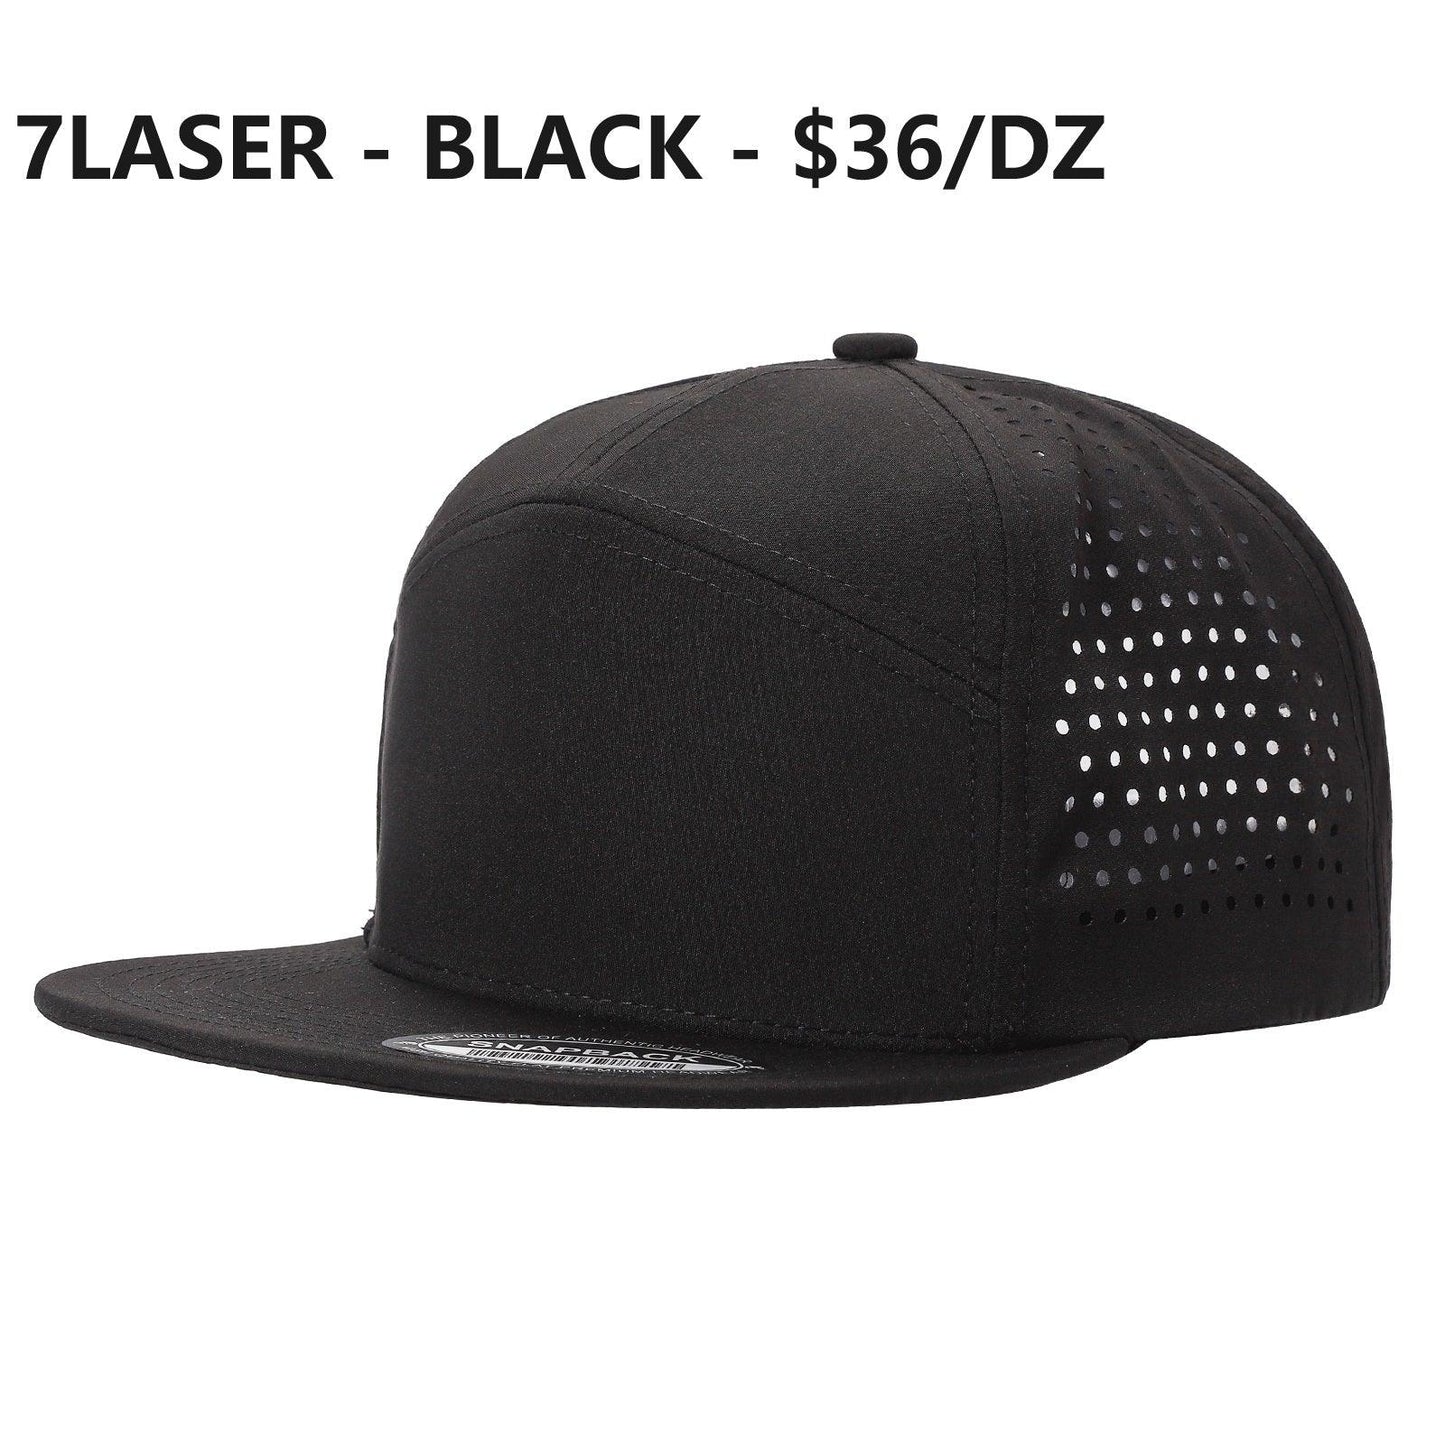 7LASER - 7 Panel Laser Vented Hat